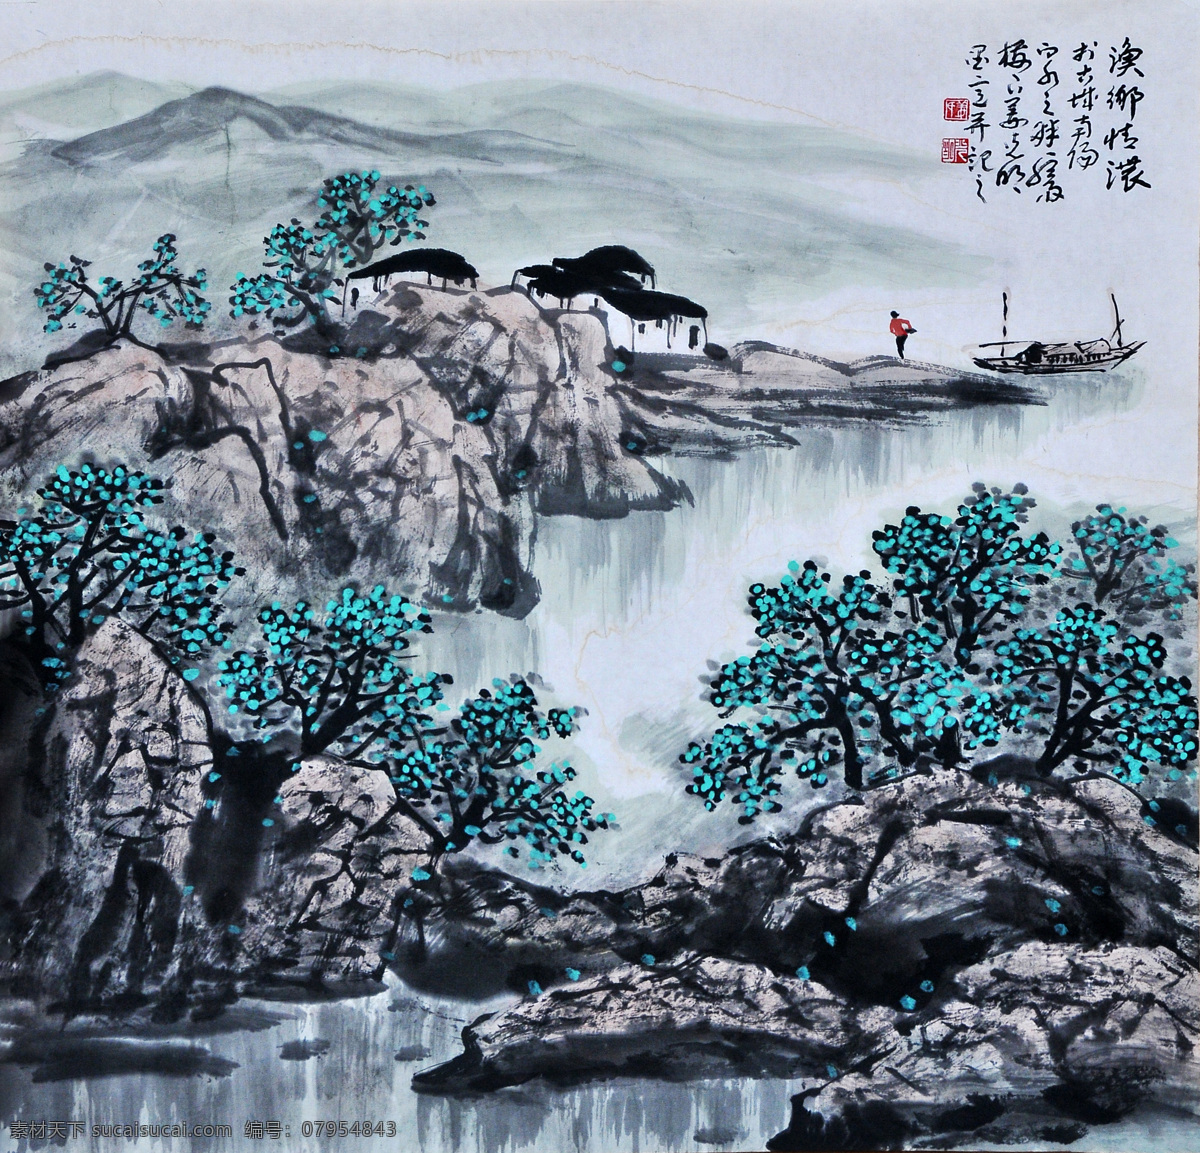 鱼乡情浓 姜光明 国画 山水 文化艺术 绘画书法 中国画 水墨画